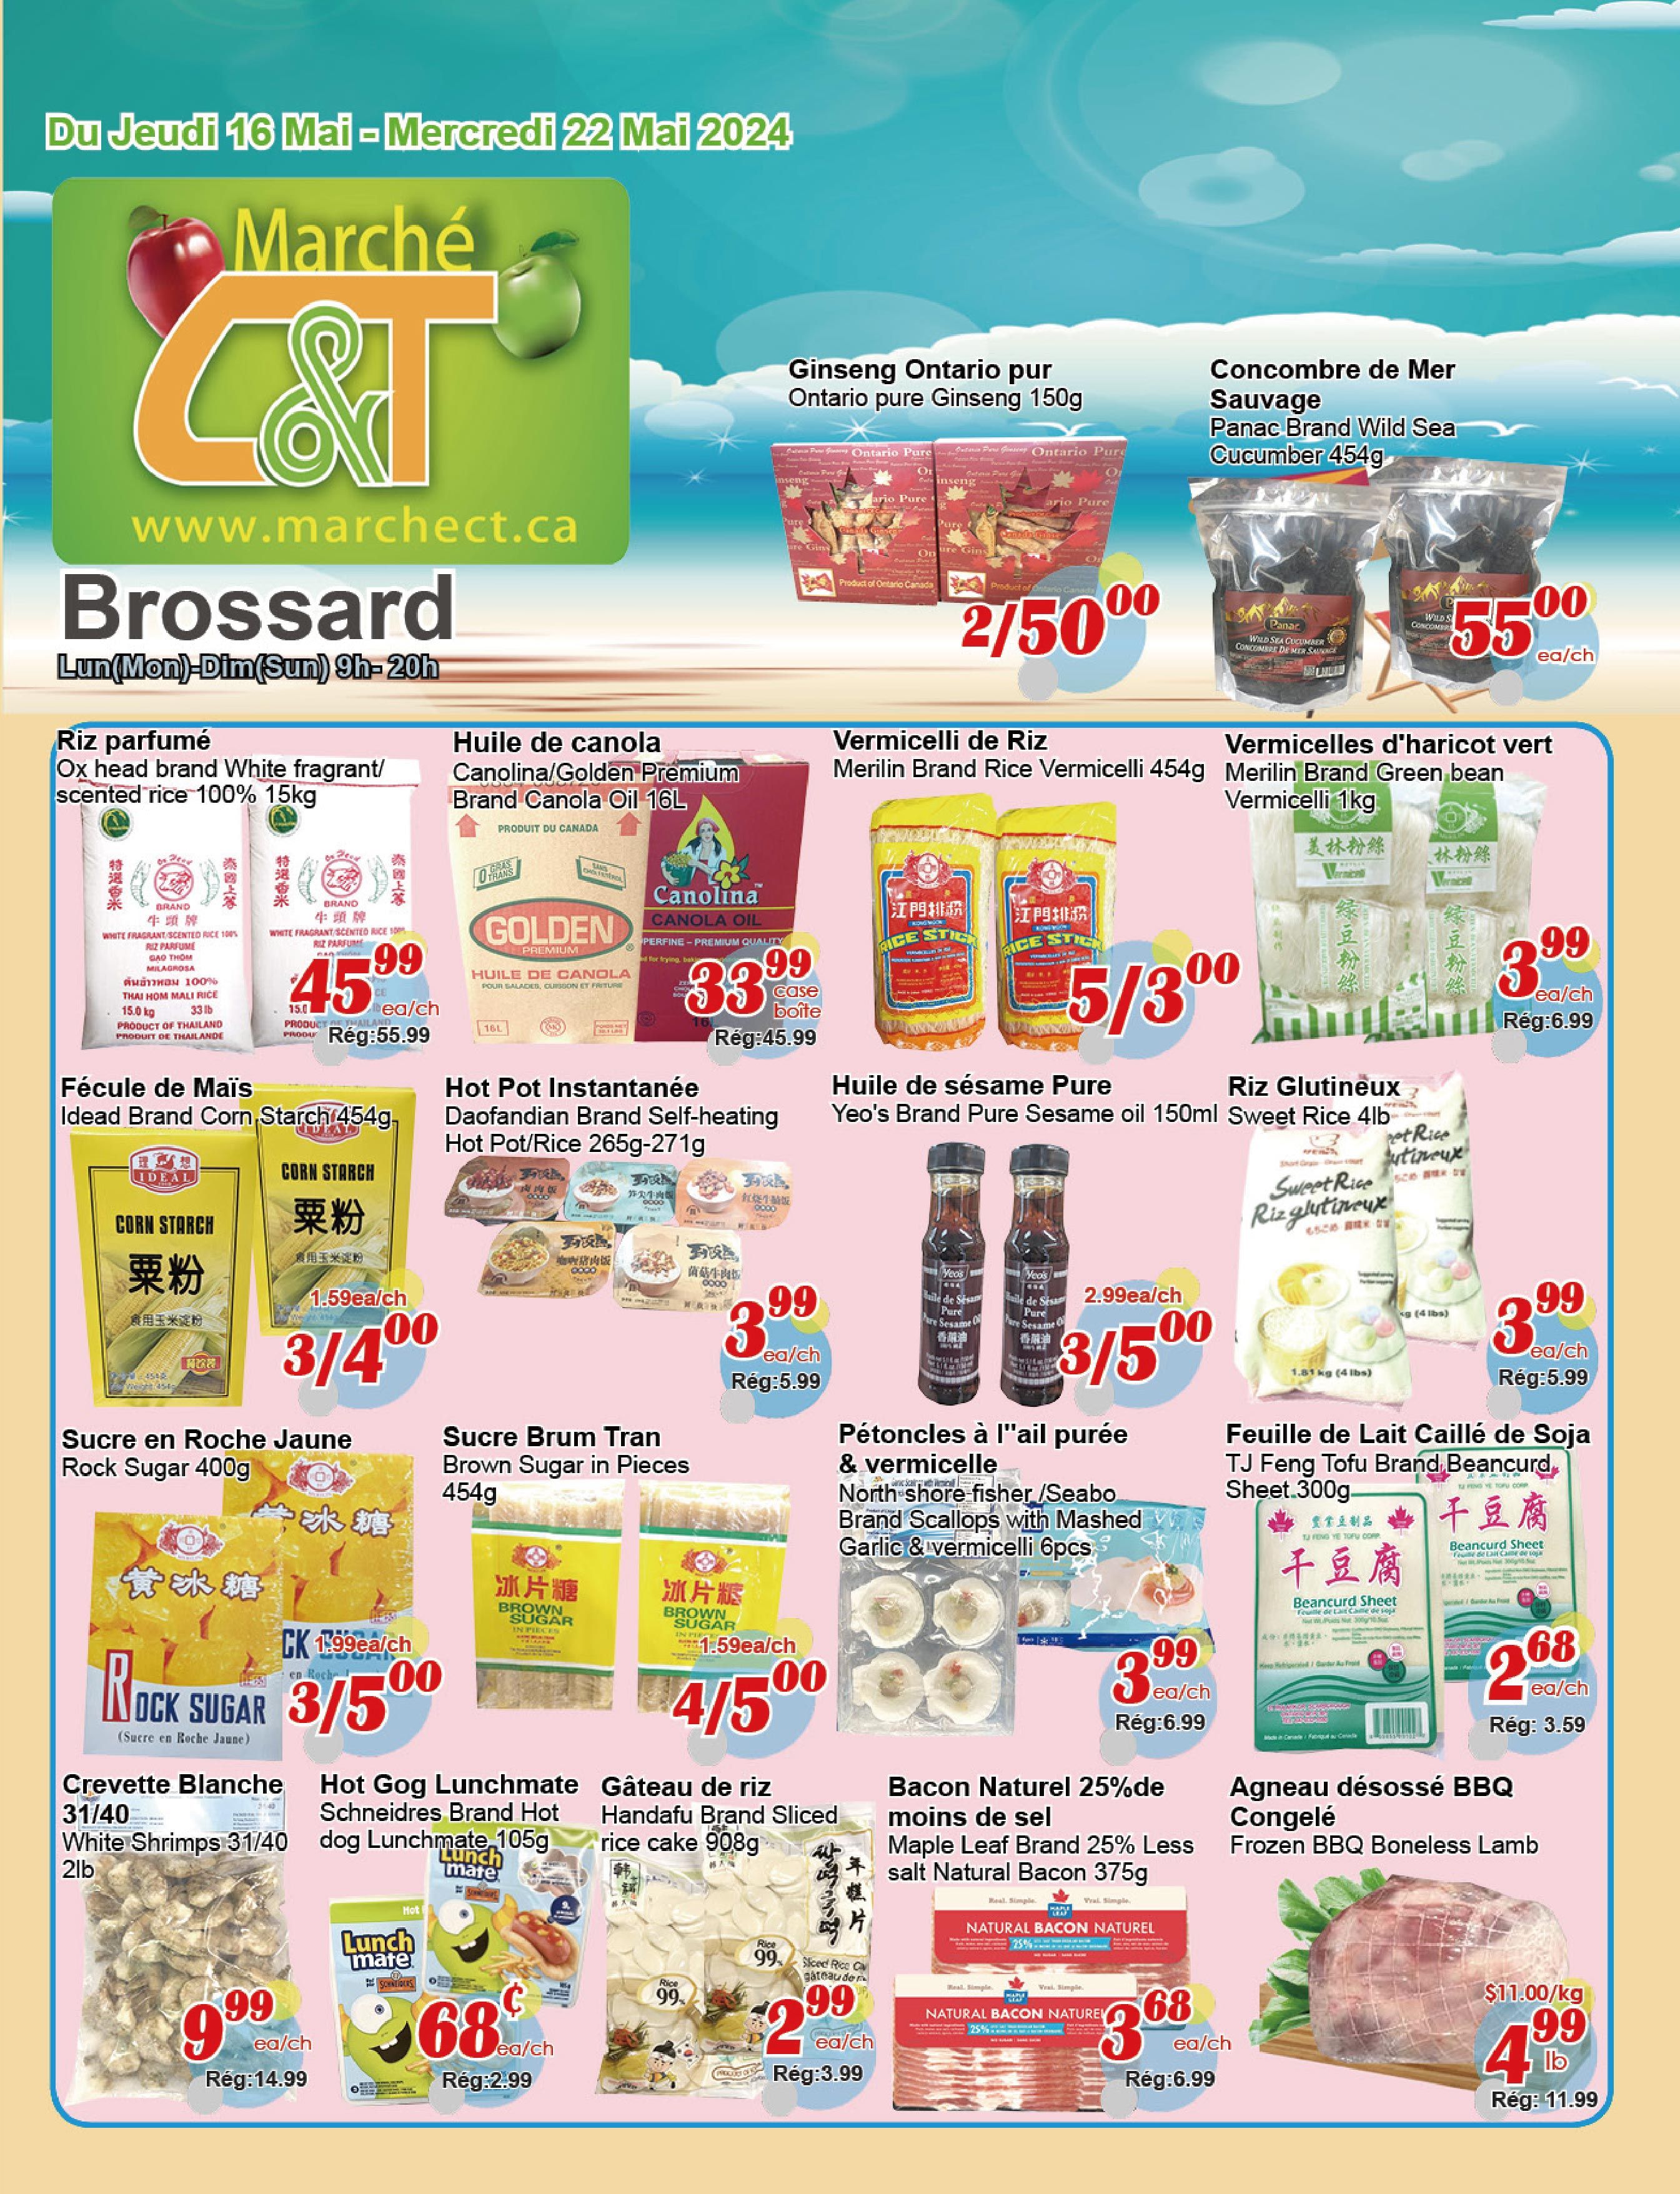 C&T Supermarket - Brossard - Weekly Flyer Specials